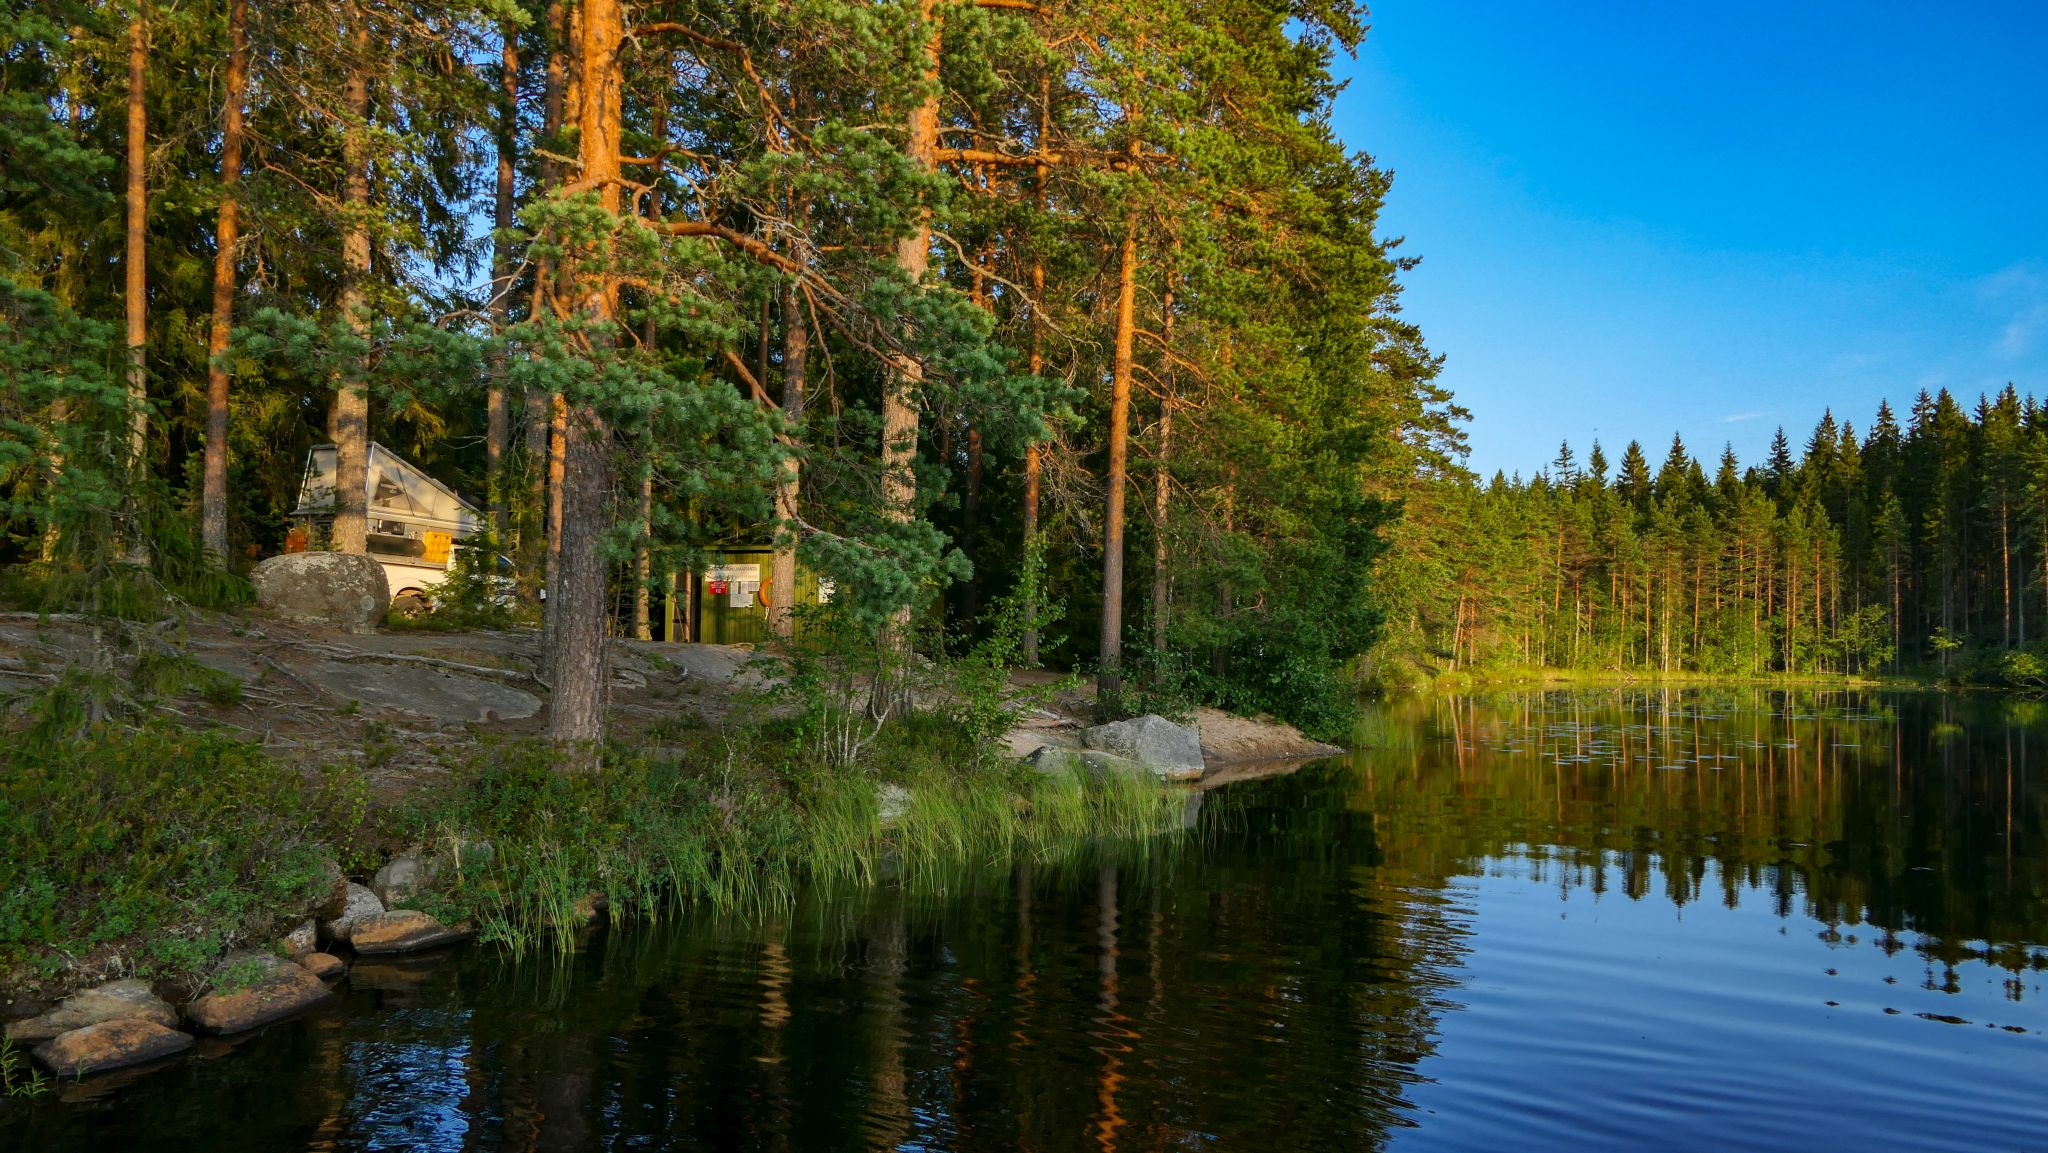 Malerische Übernachtungsplätze sind in Finnland leicht zu finden - und sogar meistens mit eigenem See.